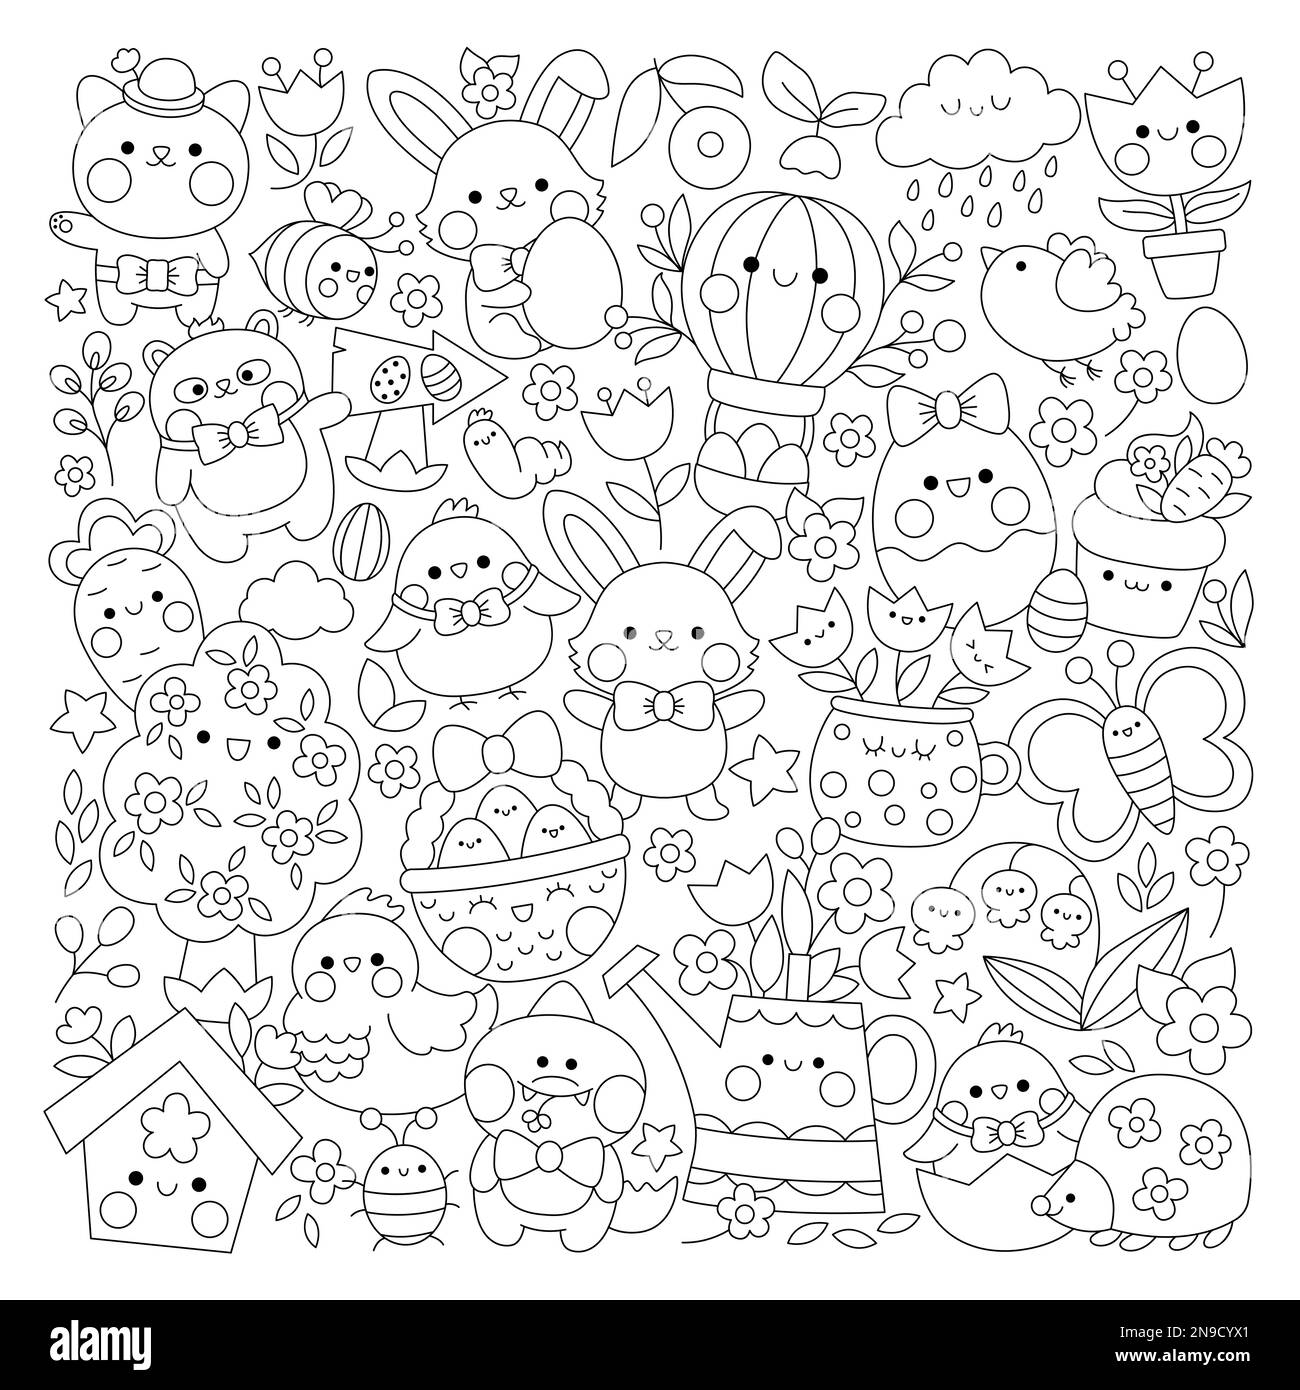 Vector Easter – Seite mit viereckigen Linien für Kinder mit niedlichen Kawaii-Figuren. Schwarzweißes Weihnachtsfoto mit lustigem Häschen, Mädels, an Stock Vektor